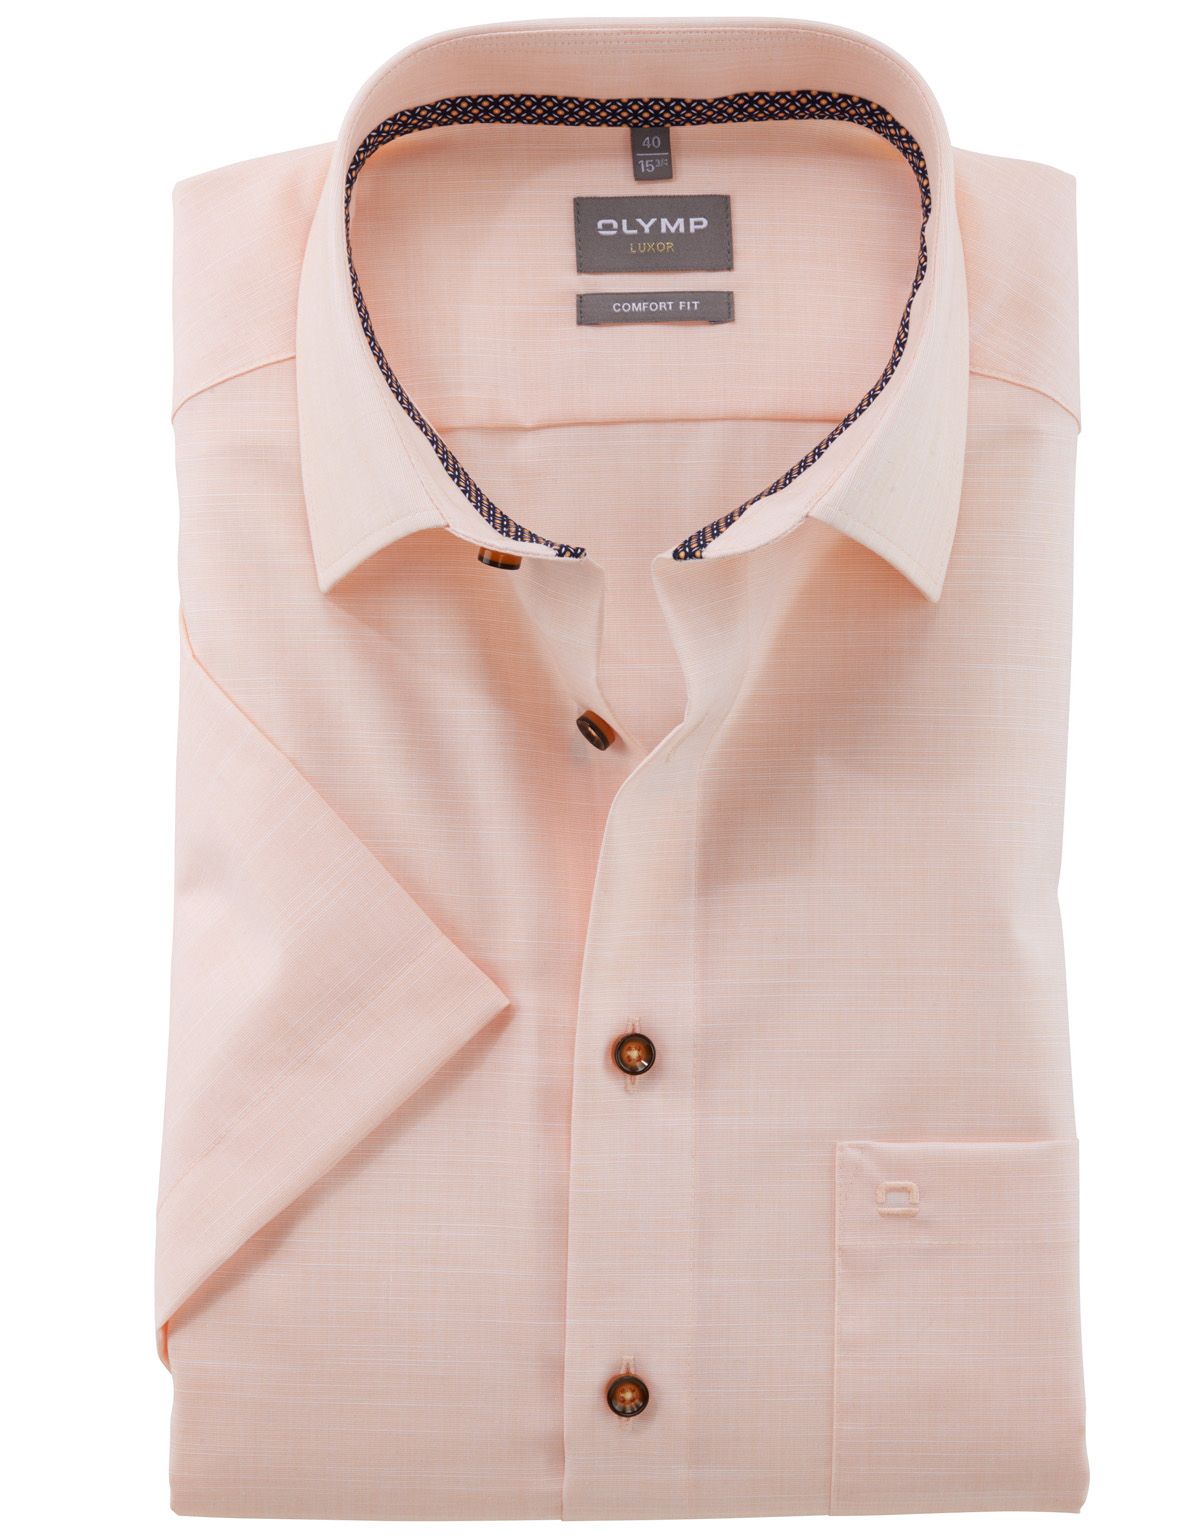 Рубашка мужская классическая OLYMP Luxor, фактурная ткань, прямой крой[ОРАНЖЕВЫЙ]